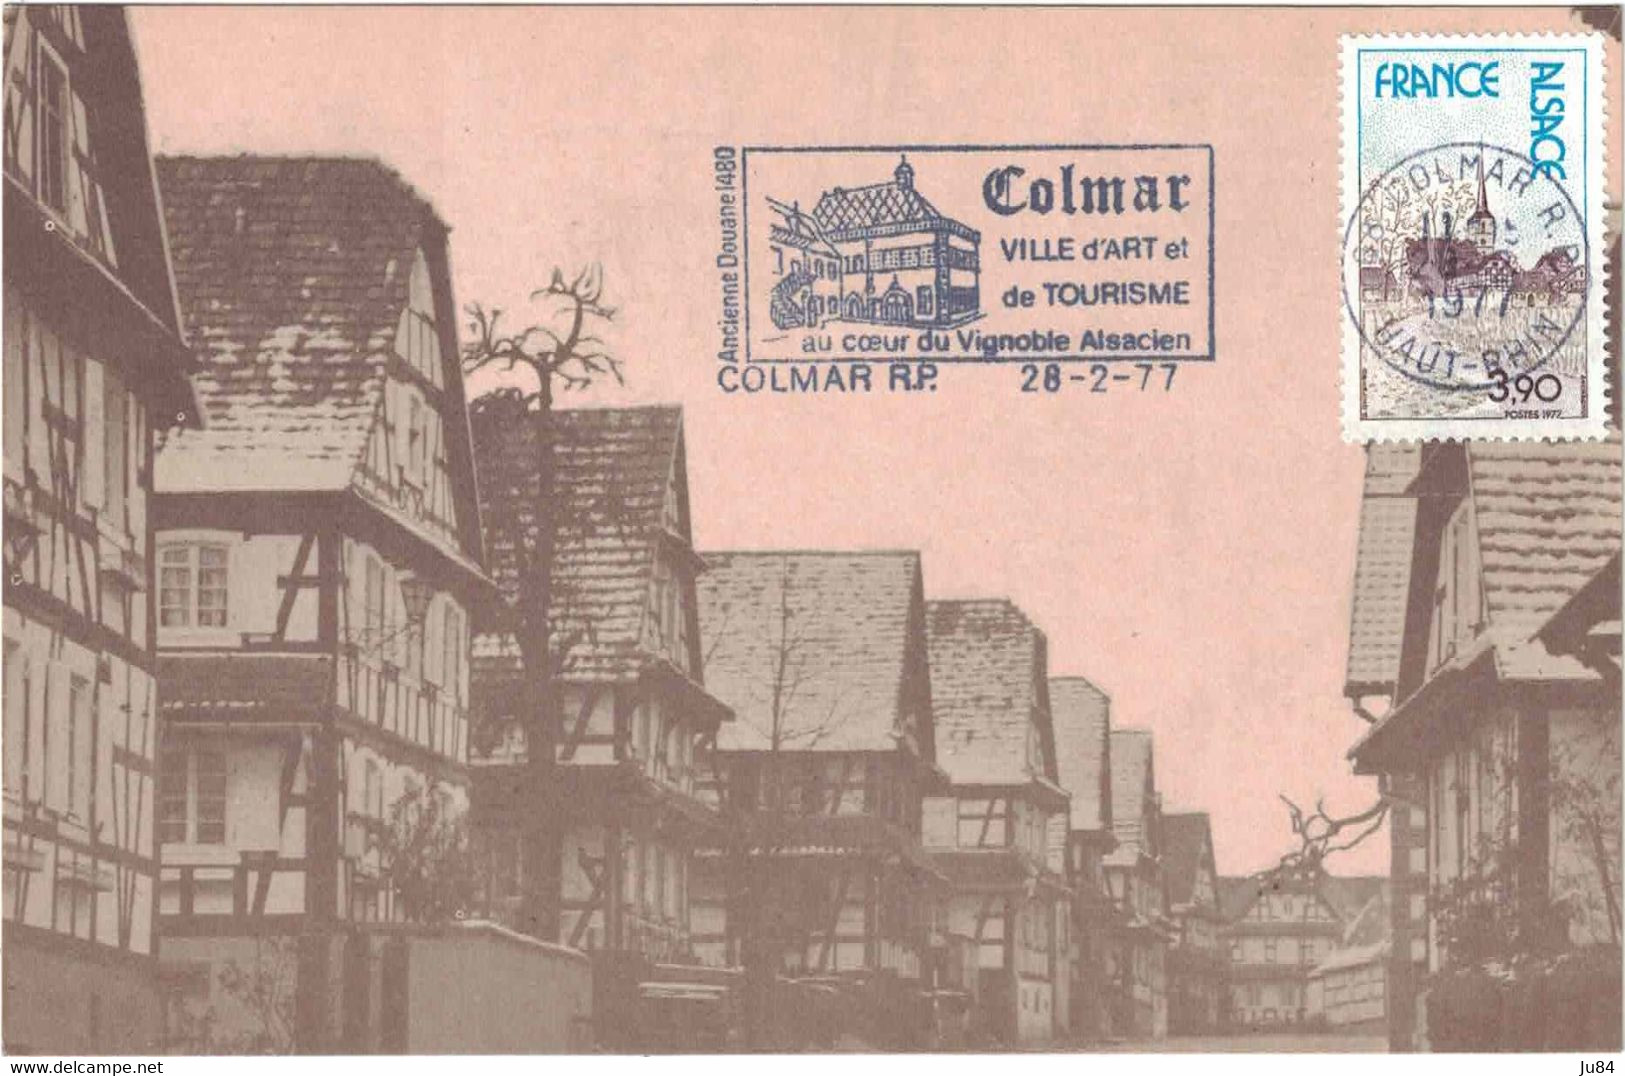 Haut-Rhin - Alsace - Colmar R.P. - Flamme - Ville D'art Et De Tourisme - Carte Postale - 28 Février 1977 - Mechanische Stempels (reclame)